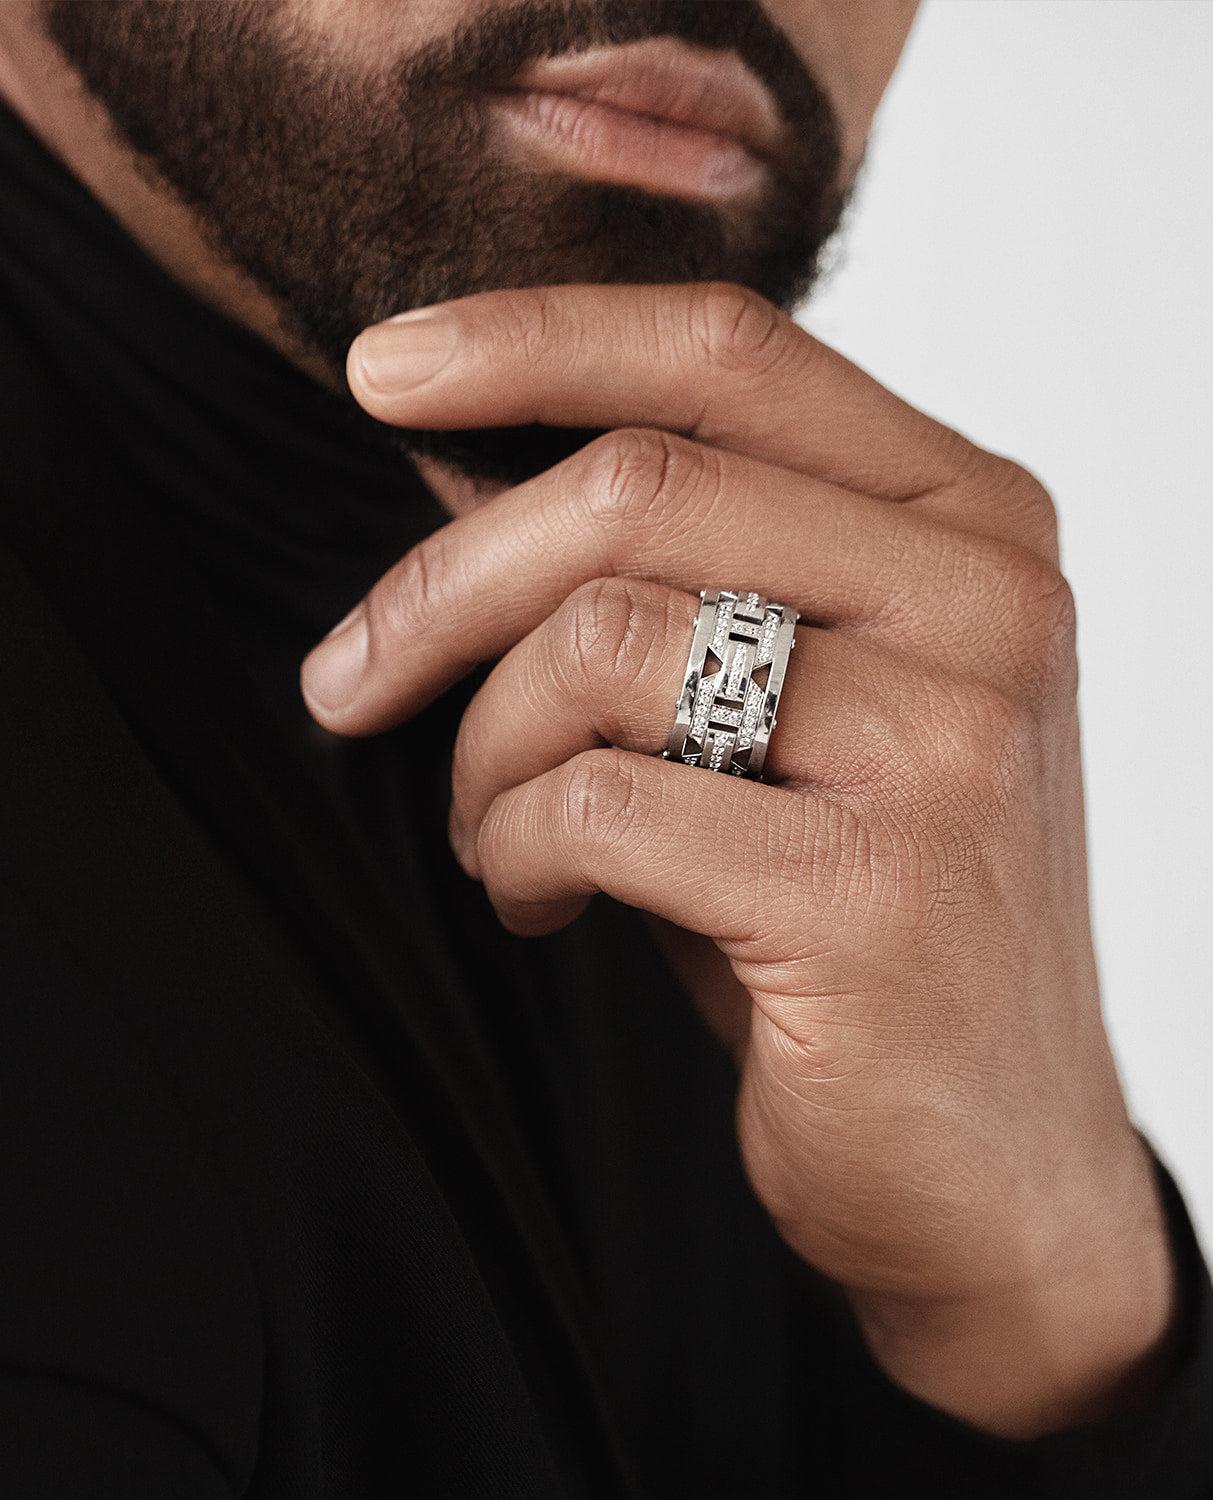 Ein wahrhaft einzigartiges Design und feine Verarbeitung sind in einem einzigartig auffälligen Ring mit 1.00ct runden weißen Diamanten im Brillantschliff in Pfannenform vereint. Das Briggs-Design ist ein außergewöhnlicher Statement-Ring für fast